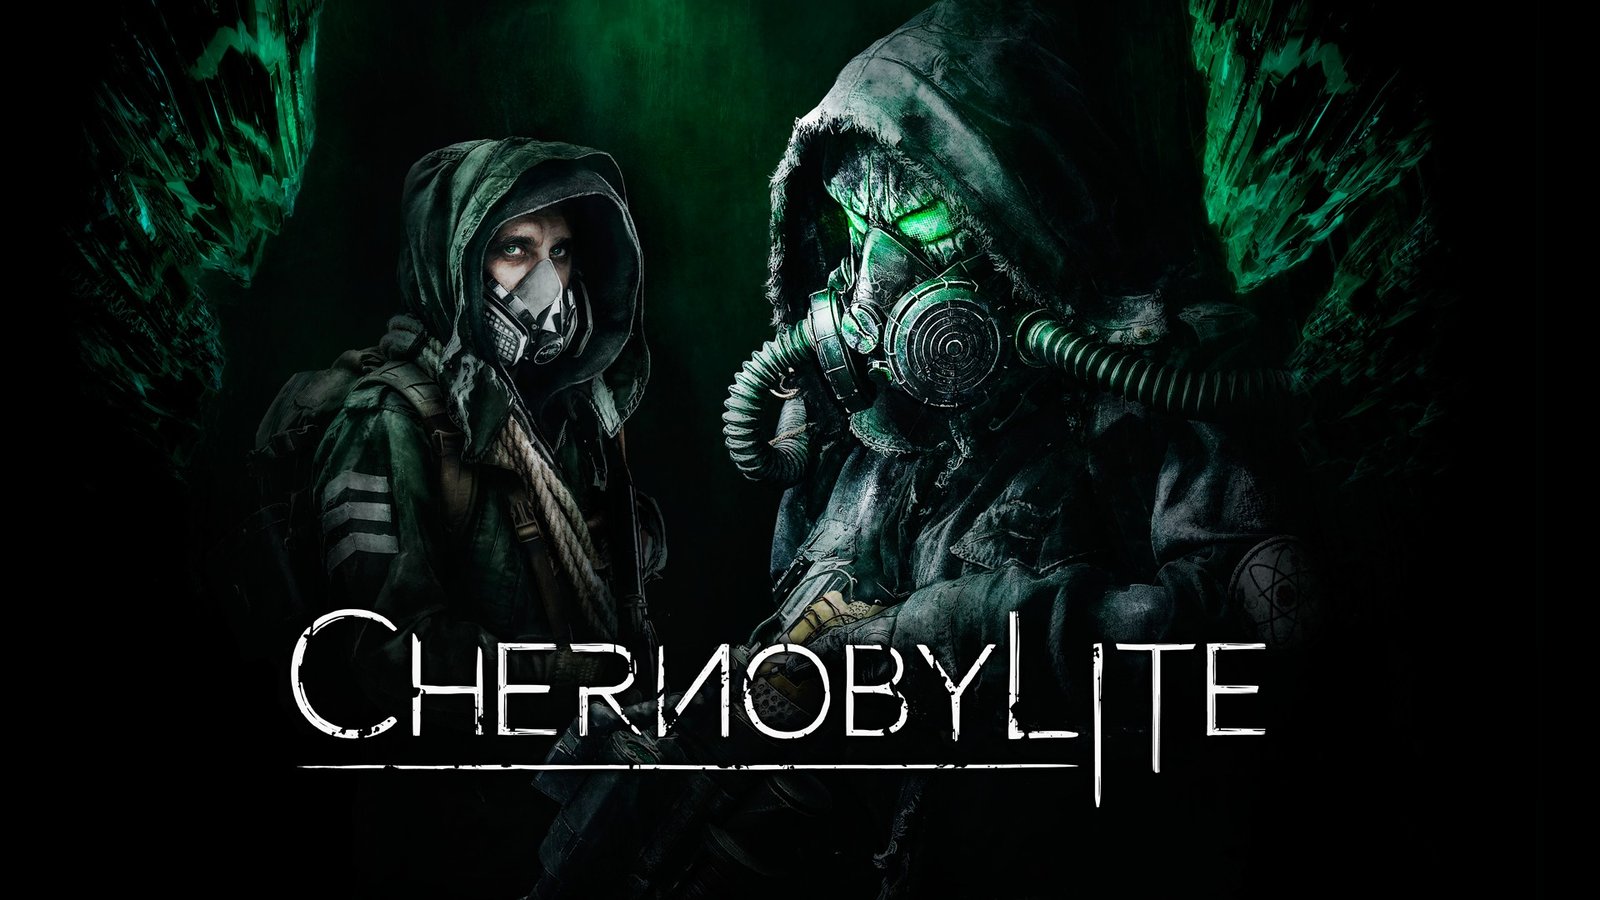 Научно-фантастический хоррор о Чернобыле Chernobylite получил дату выхода на всех платформах